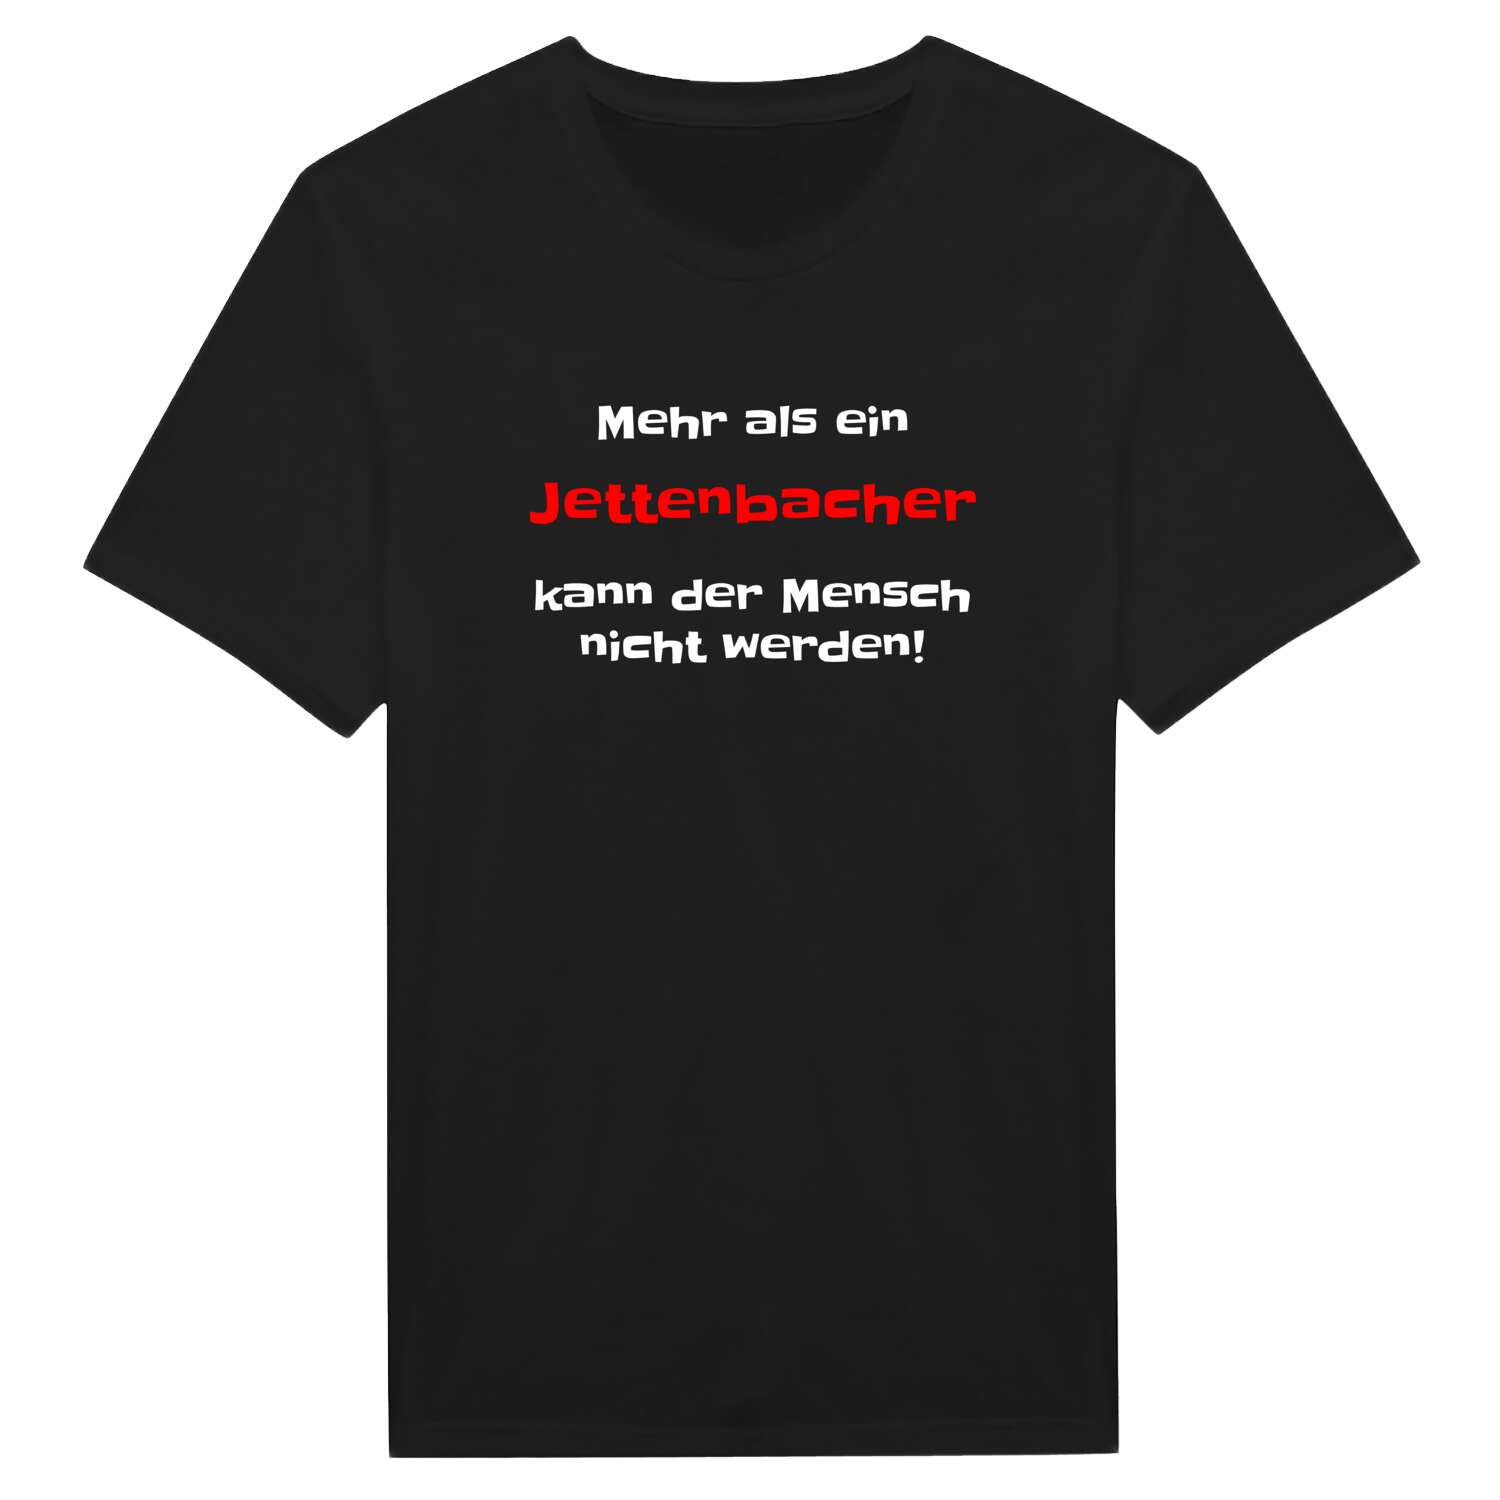 Jettenbach T-Shirt »Mehr als ein«